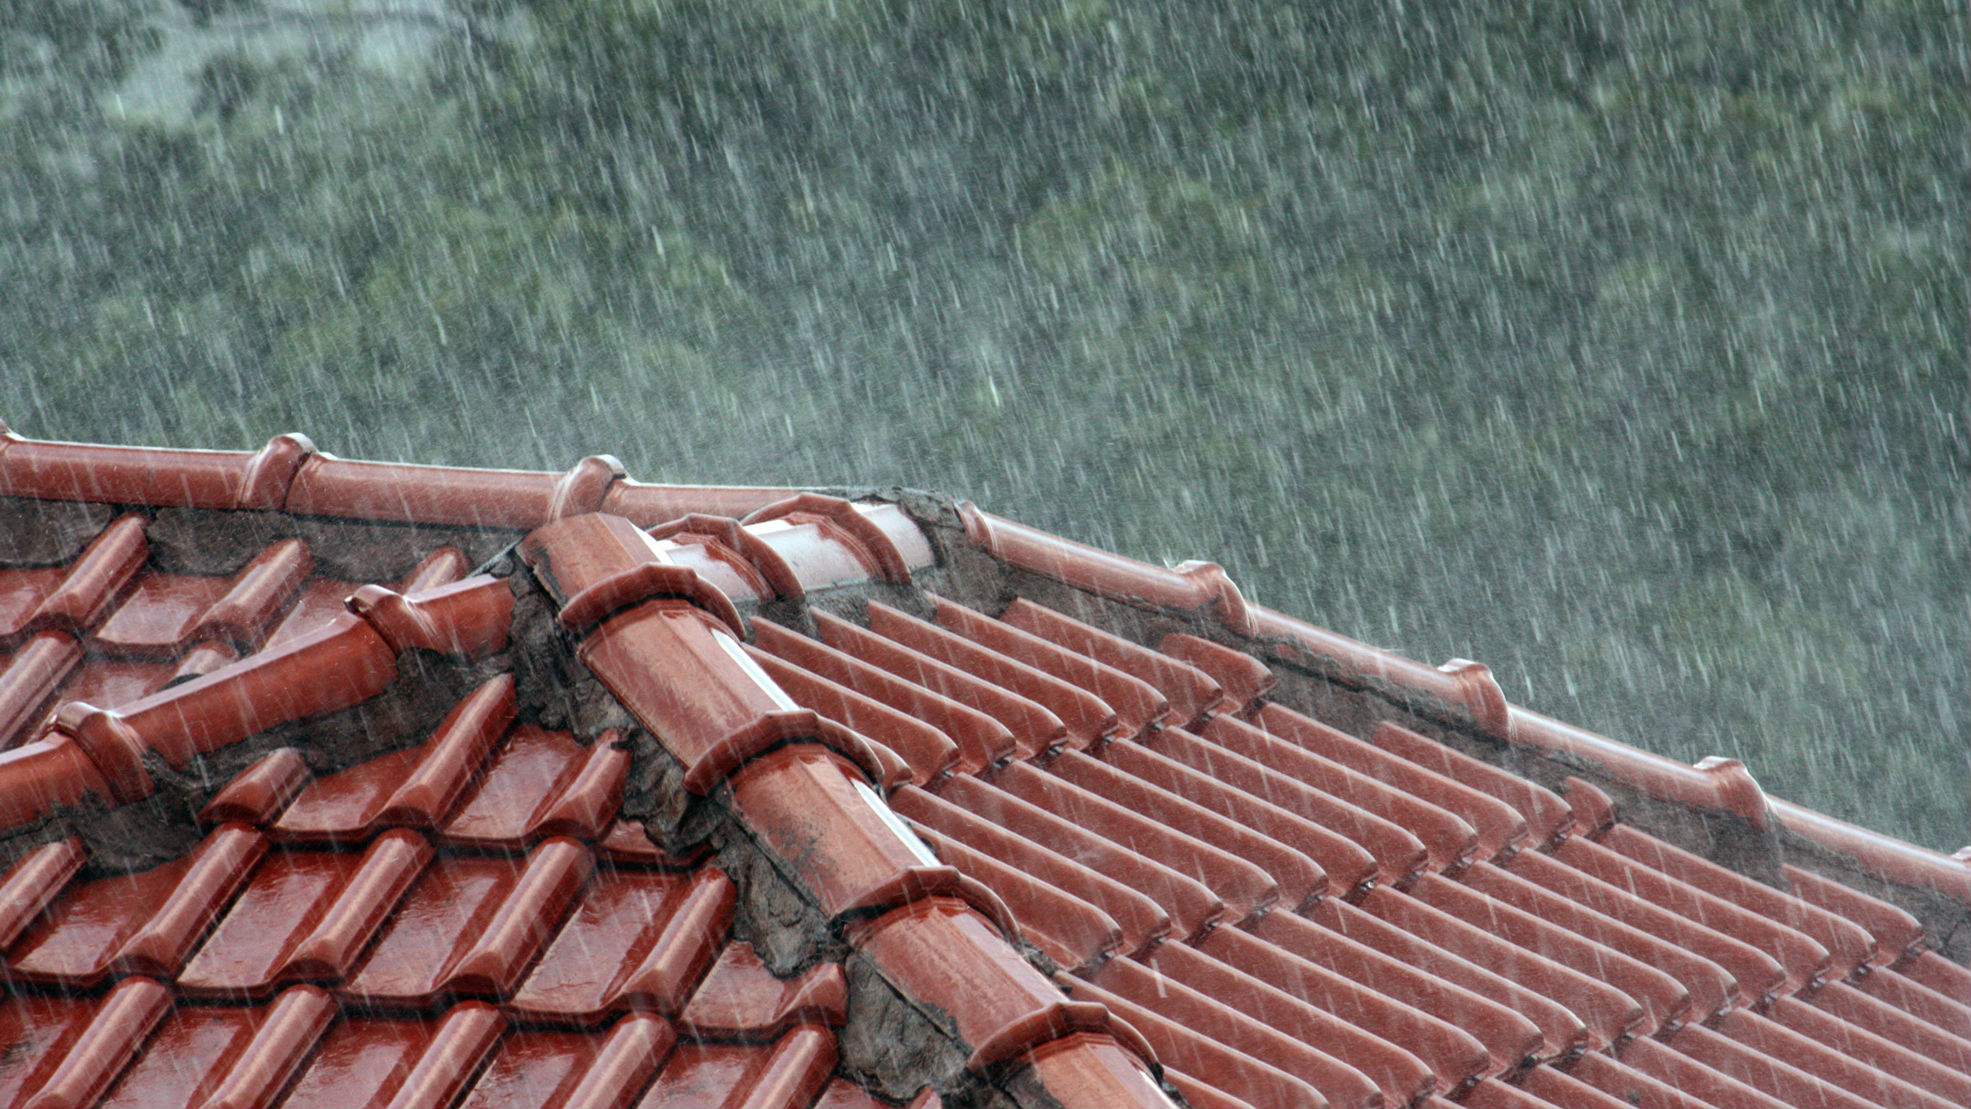 rain on roof